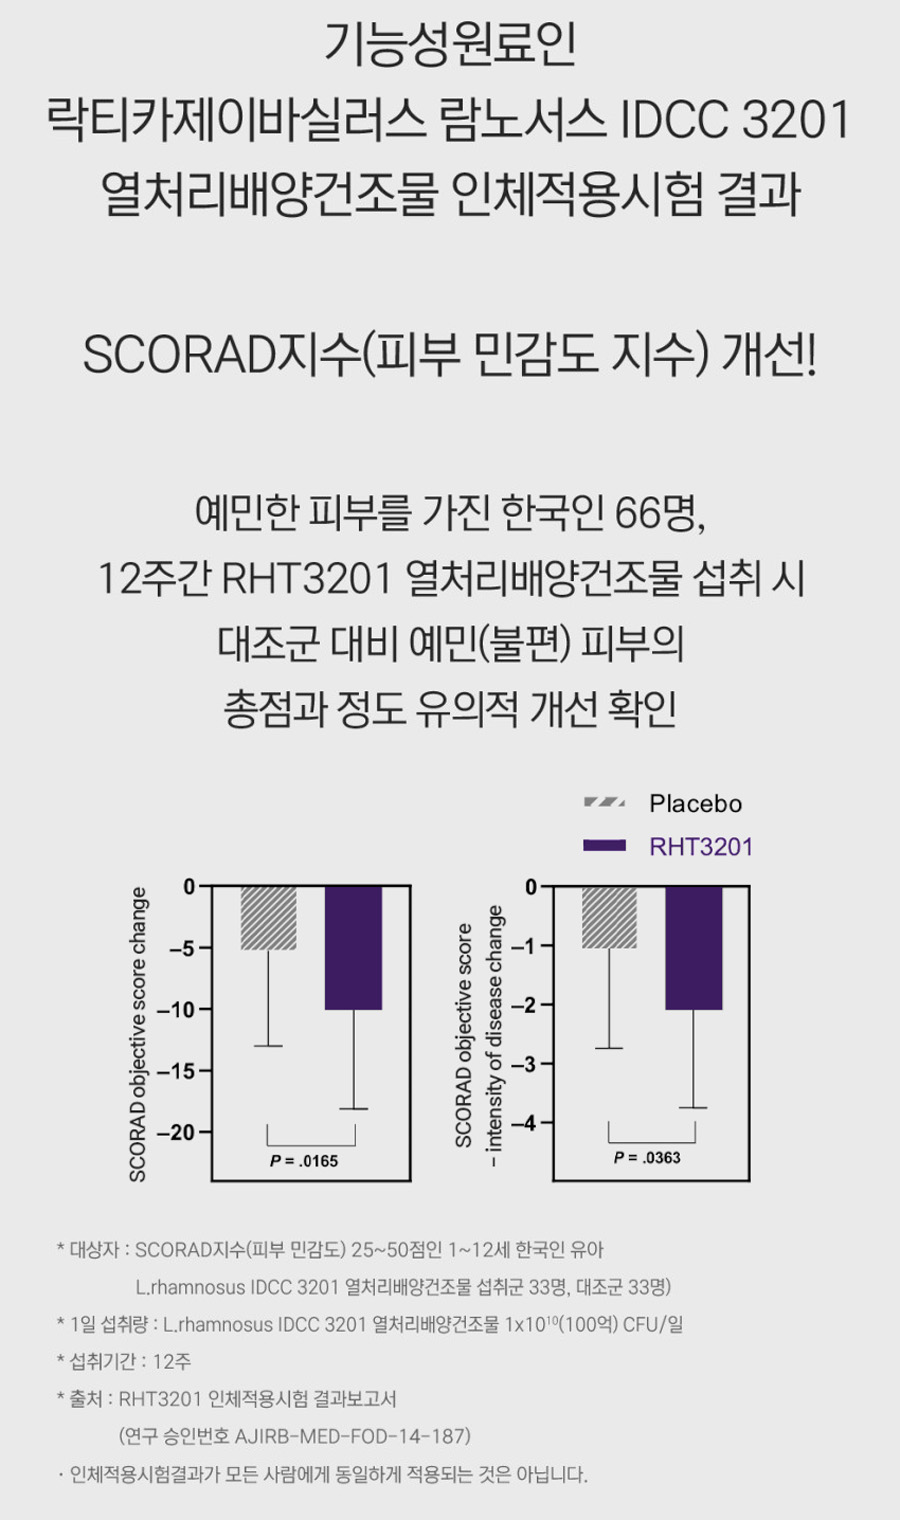 전지현 유산균 대사산물 포스트바이오틱스, 지큐랩 장건강 포스트 솔루션 후기